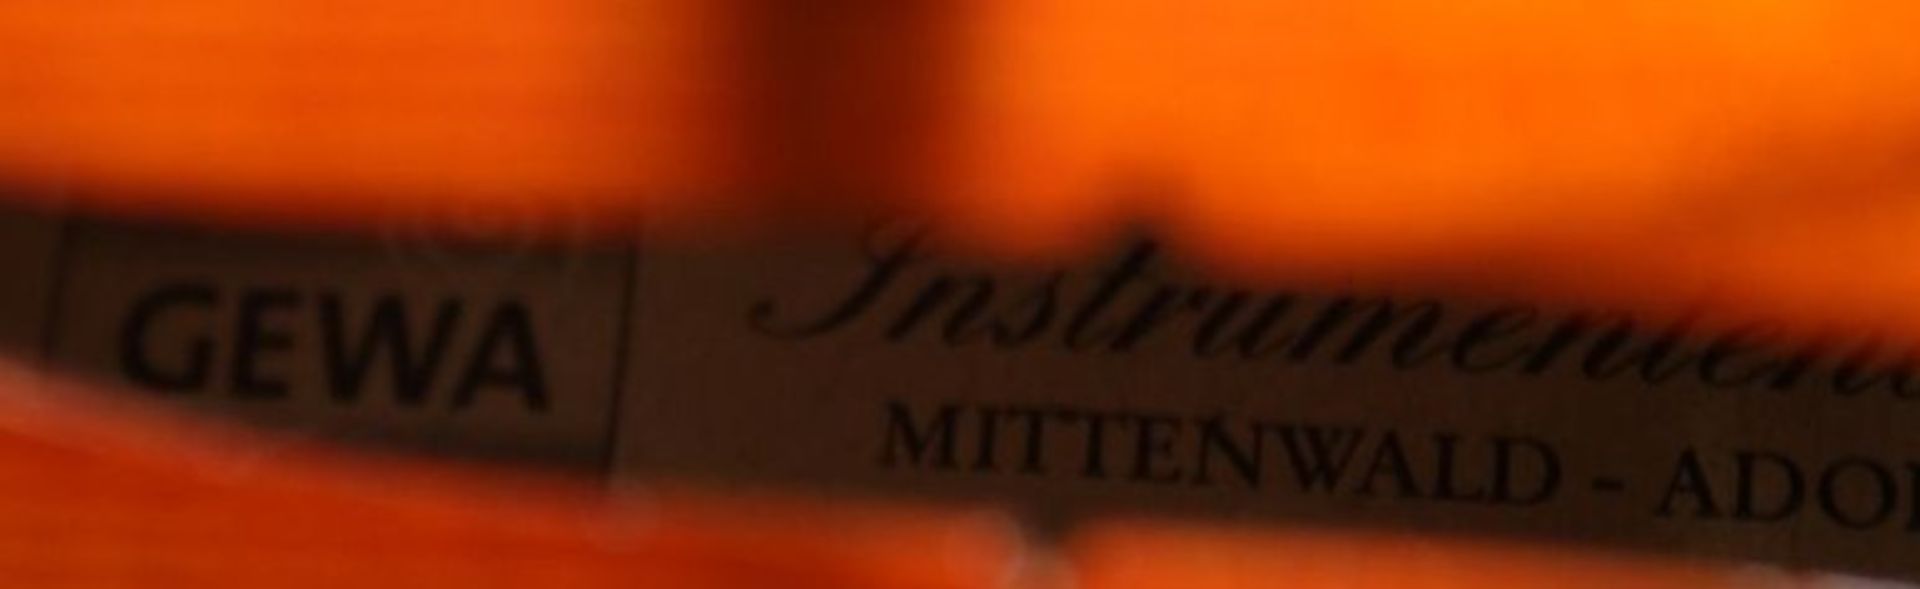 Geige, innen Klebeetikett "Intrumentenbau Mittenwald -Adorf", guter Zustand, anbei Bogen, L-57cm, in - Bild 8 aus 9